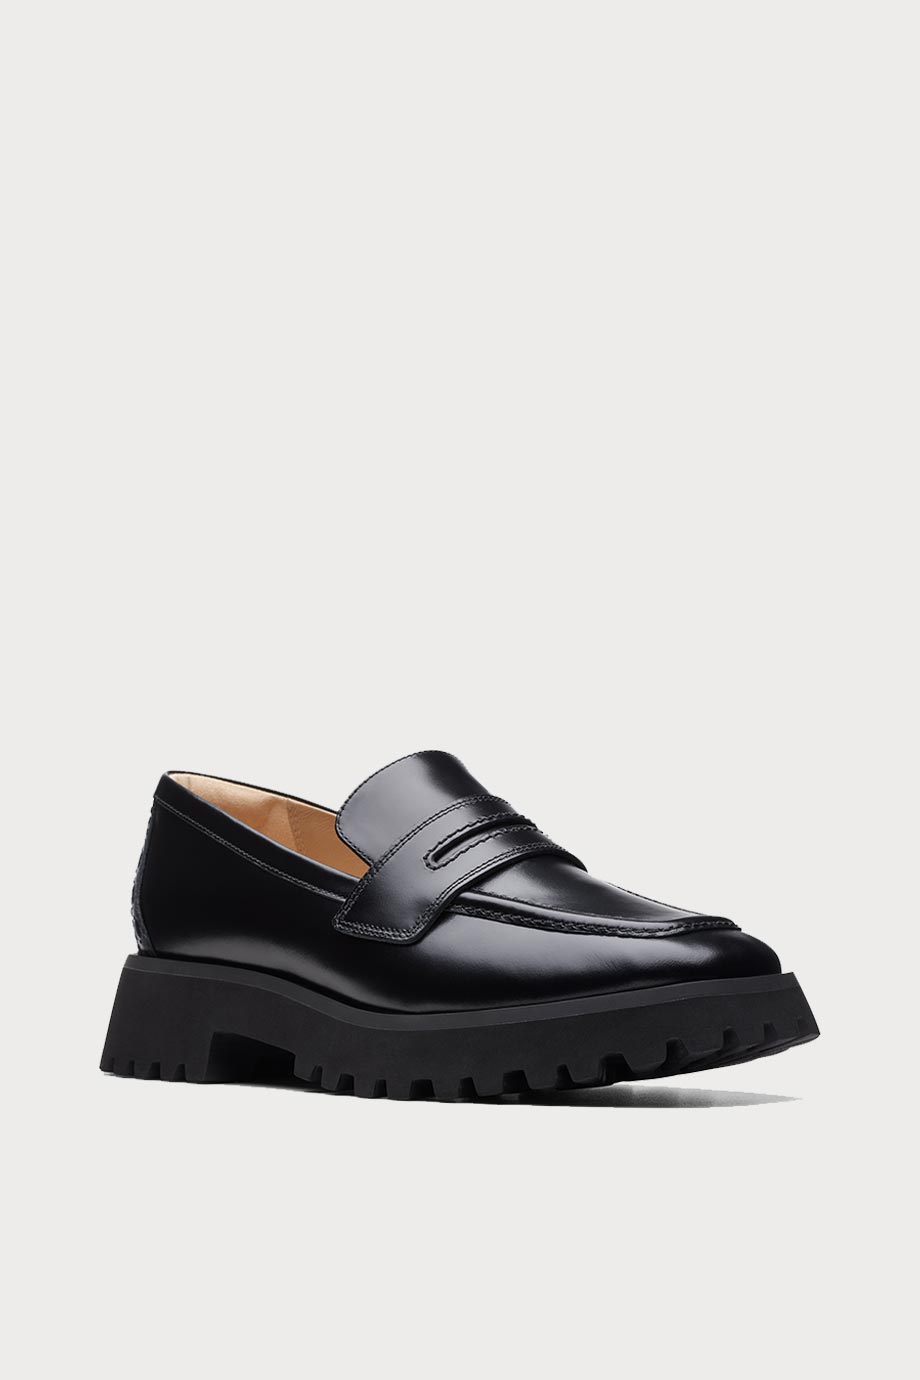 spiridoula metheniti shoes xalkida stayso edge black leather clarks 2 p